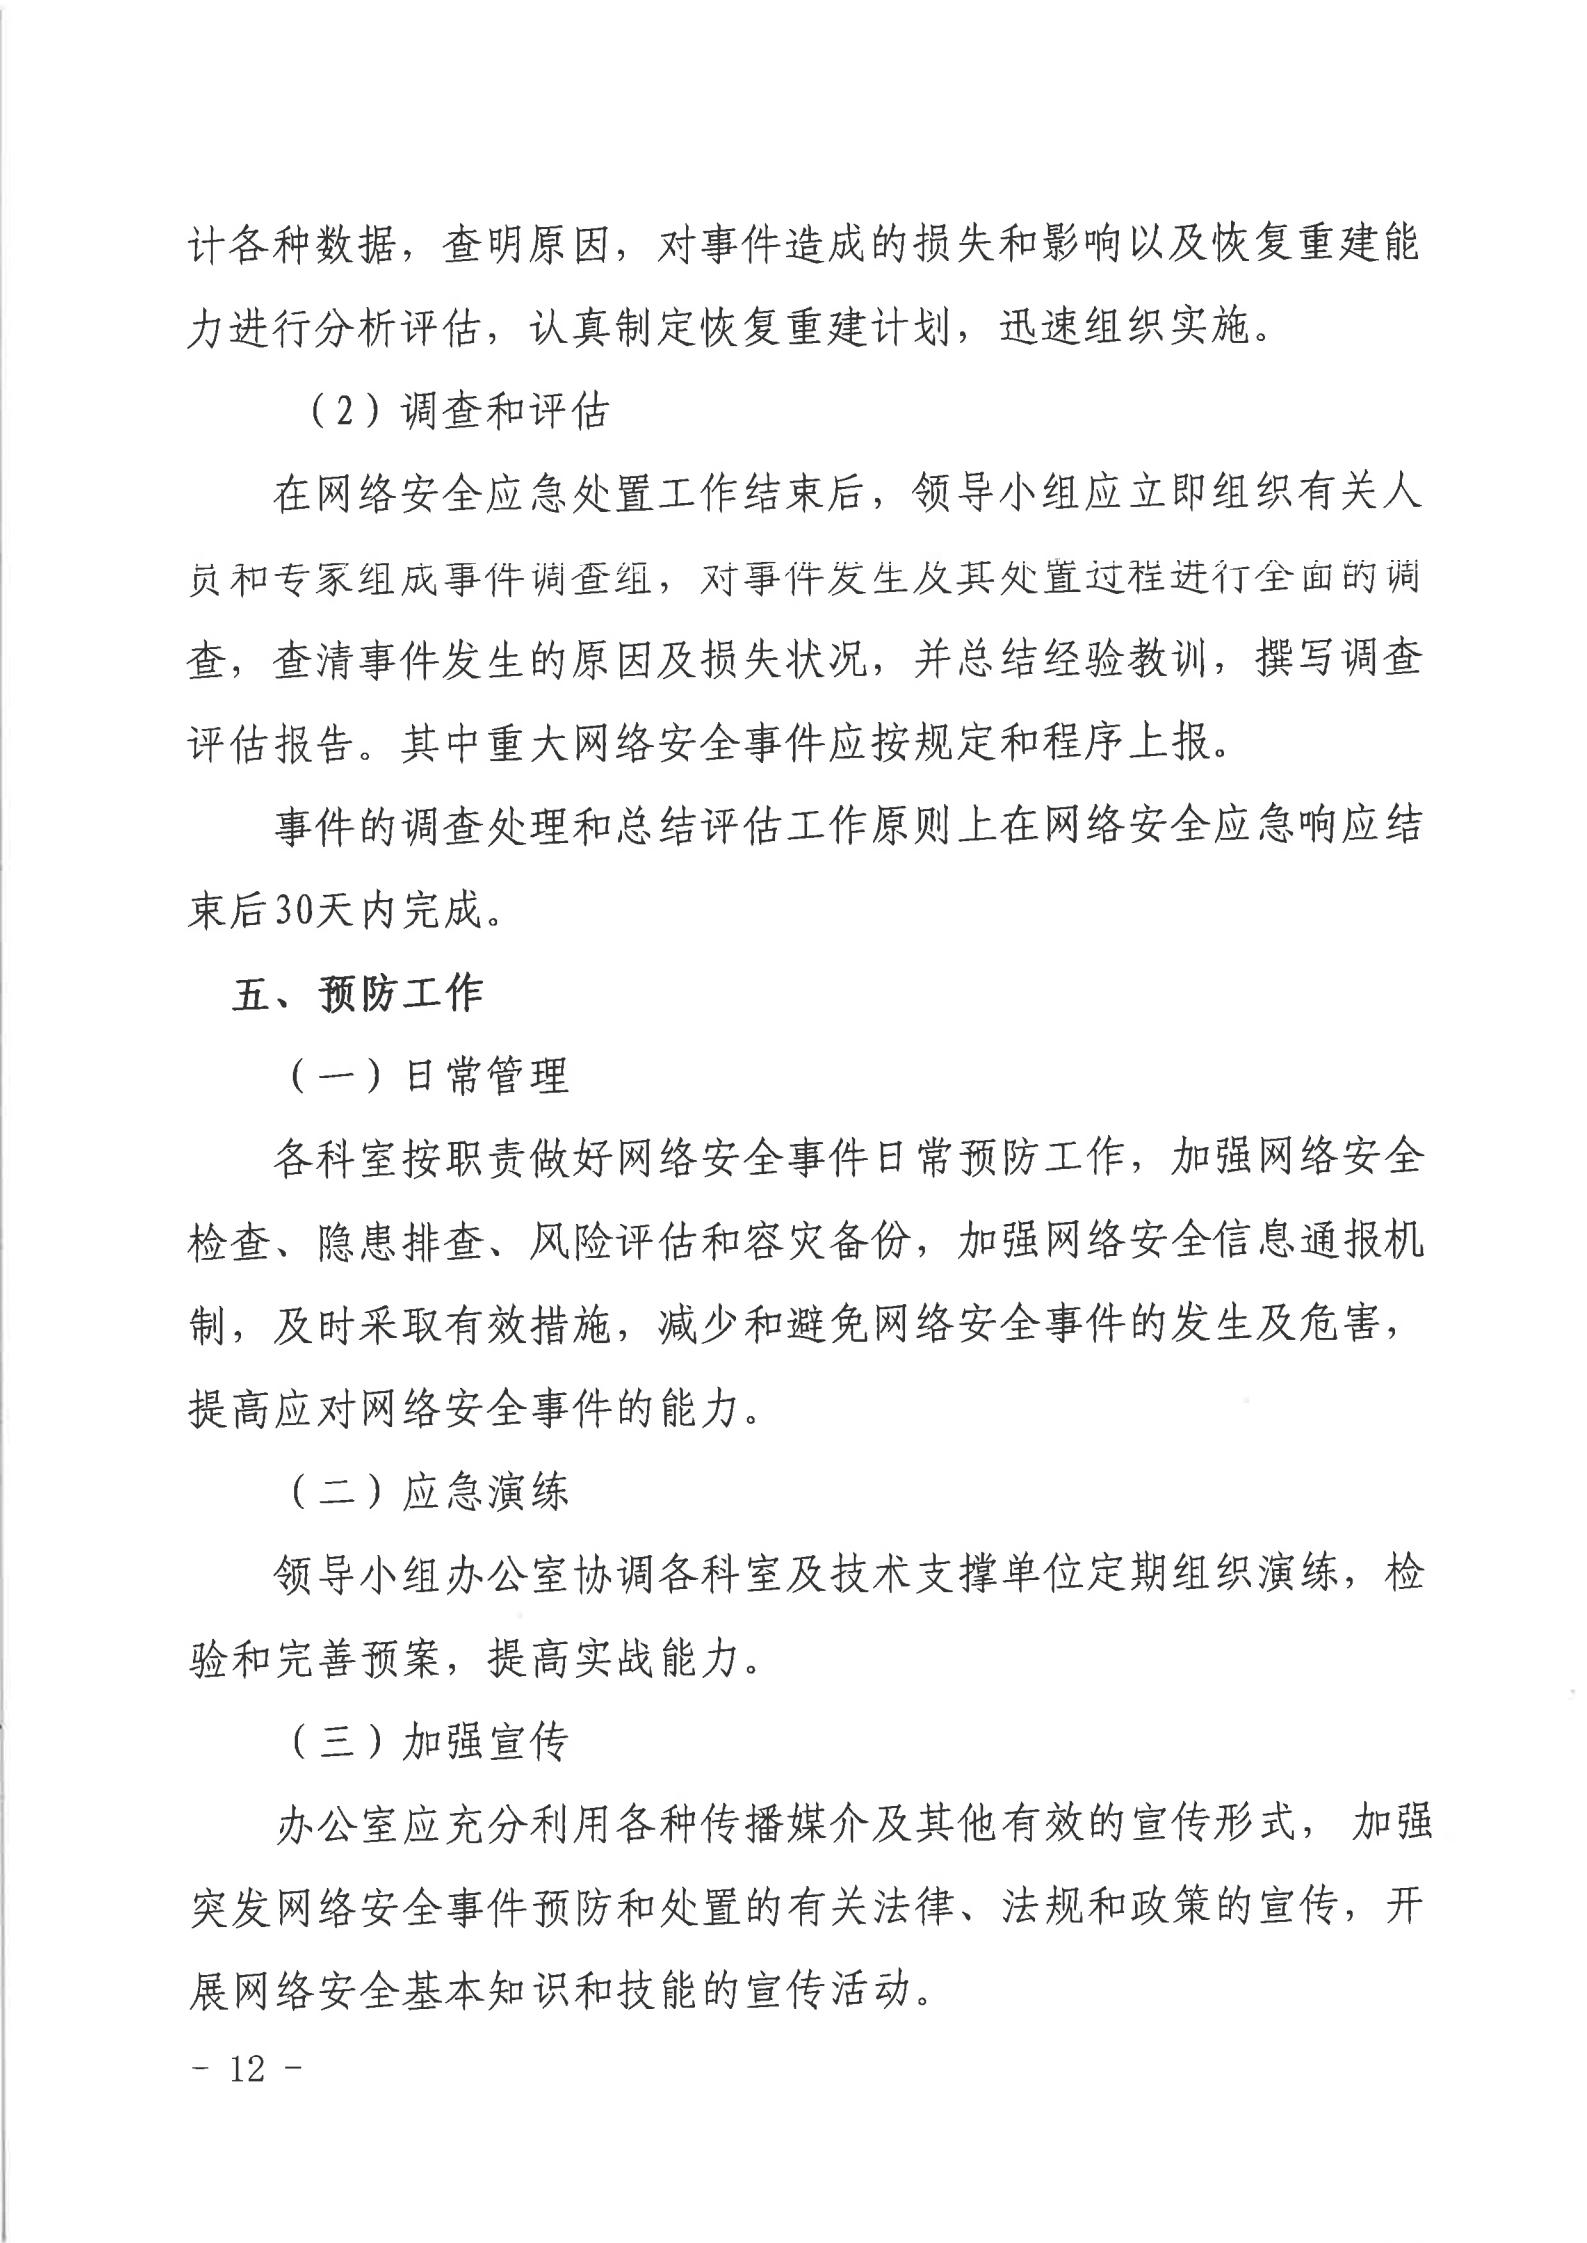 湛江市人民政府行政服务中心网络安全应急预案_11.jpg